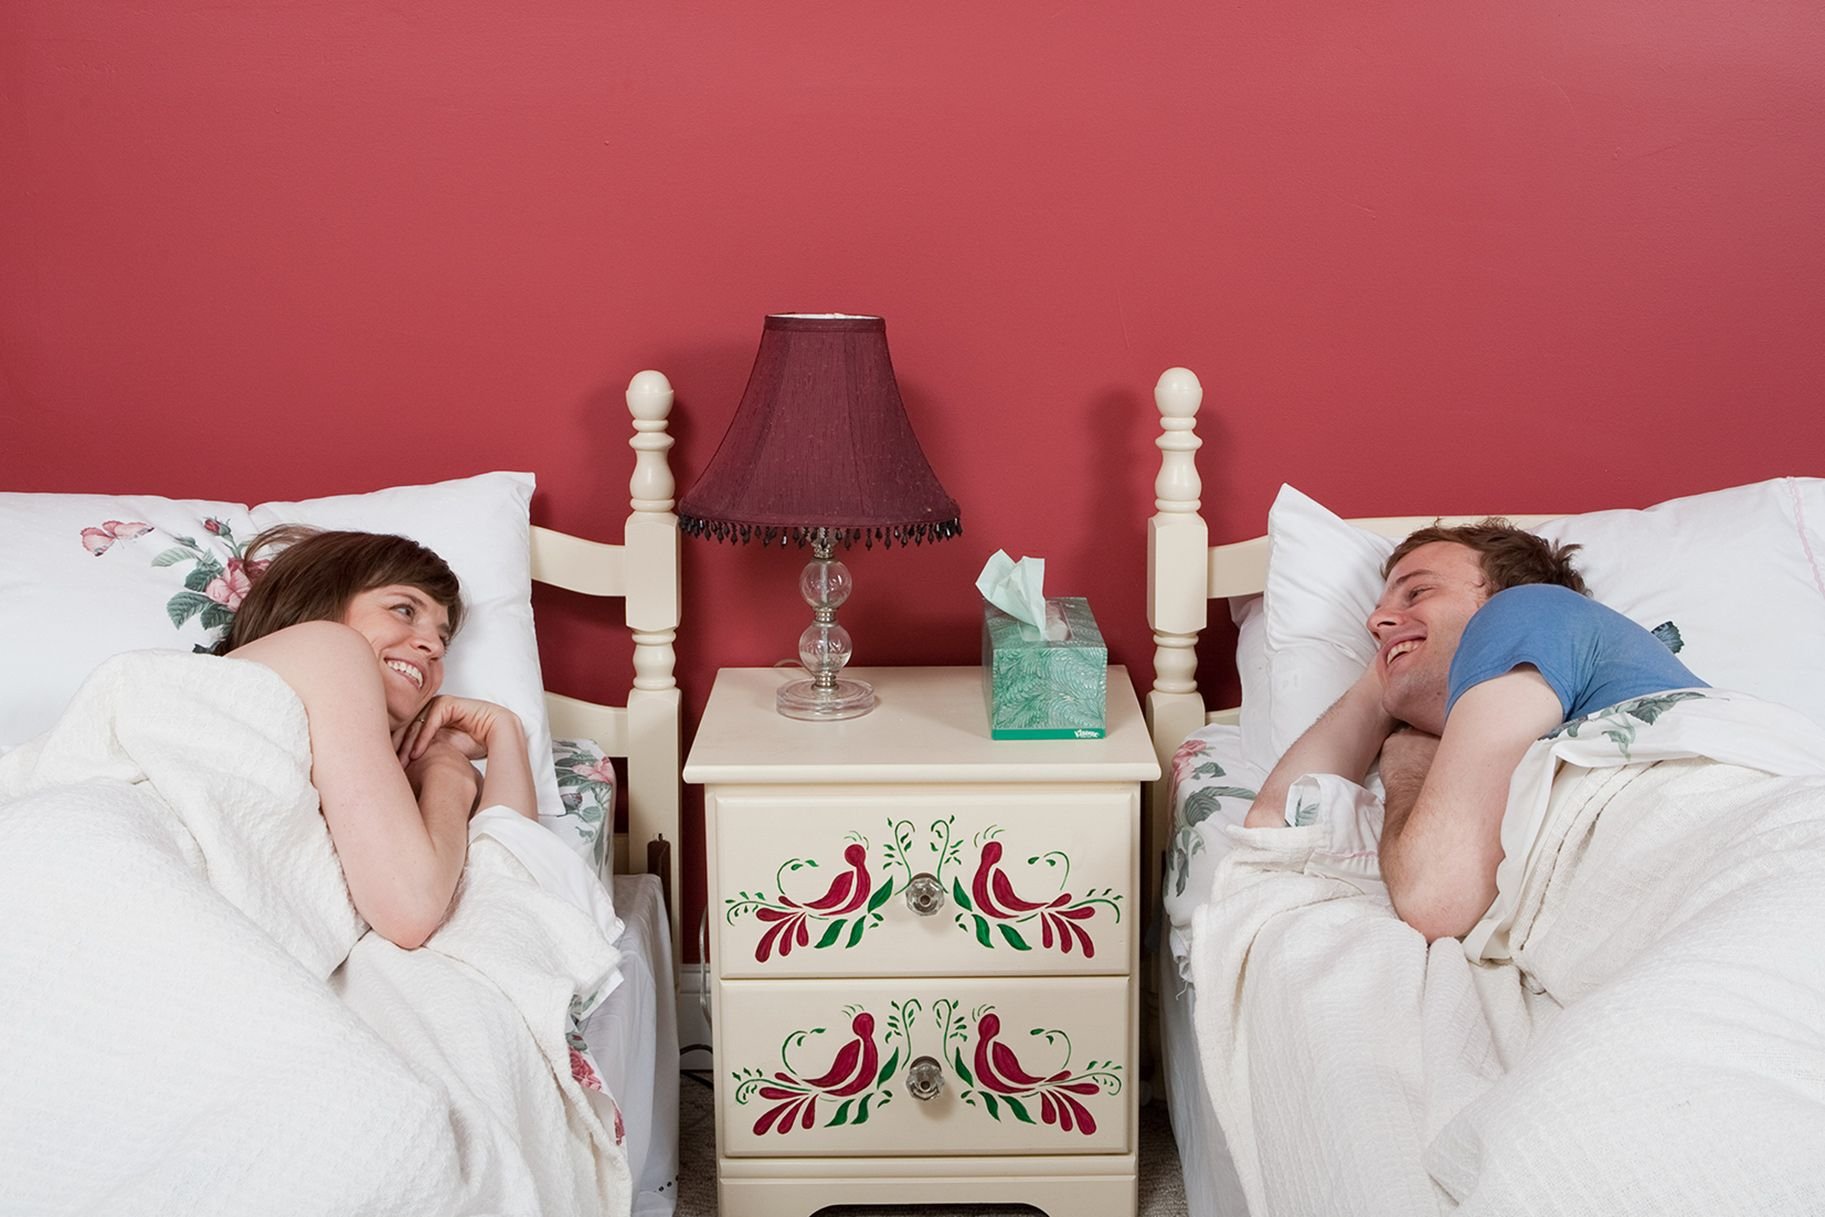 Пришли с женой в спальне. Фотосессия в спальне. Сон супругов. Спят в разных комнатах. Отдельные кровати для супругов.